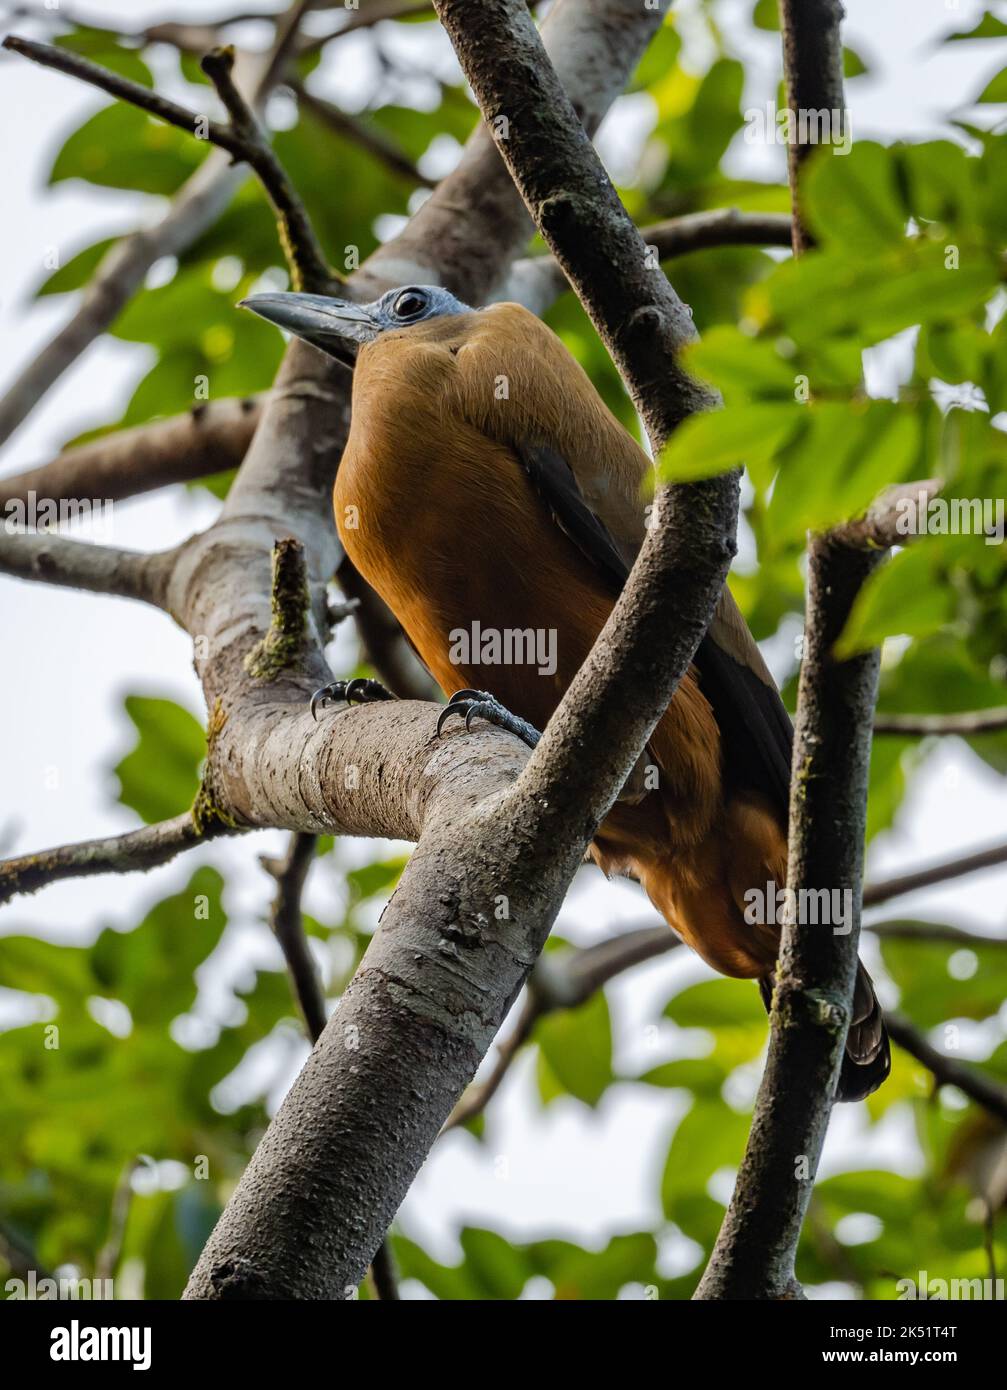 Un Capuchinbird salvaje (Perissocephalus tricolor) encaramado sobre un árbol en el bosque tropical. Amazonas, Brasil. Foto de stock